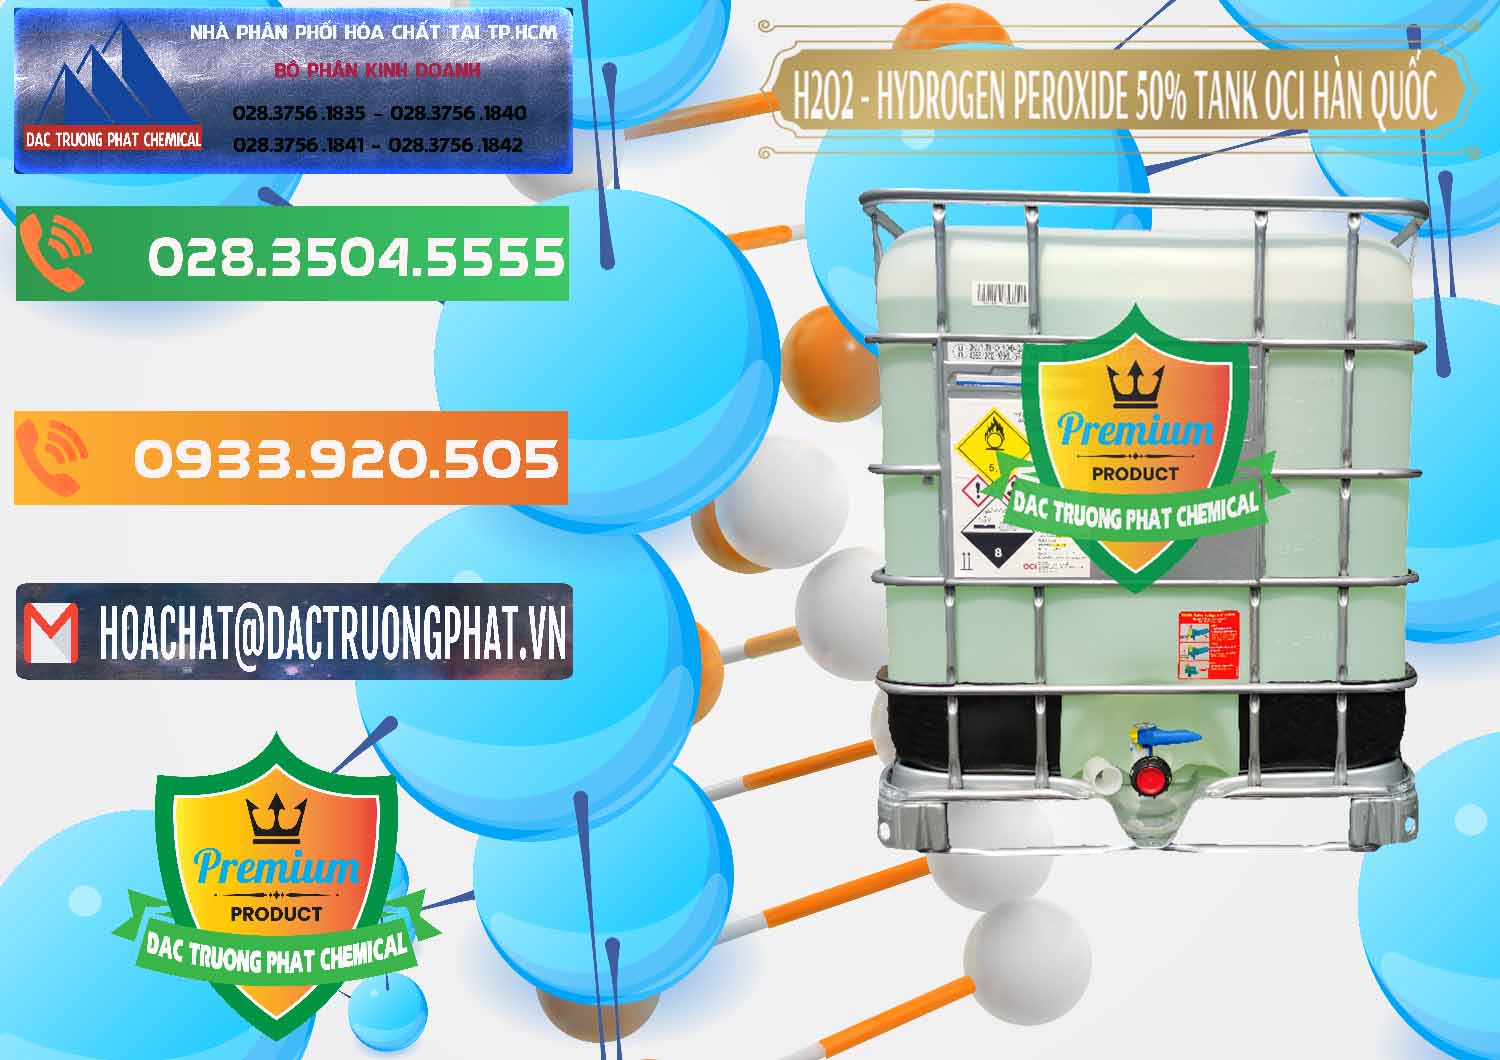 Đơn vị kinh doanh ( bán ) H2O2 - Hydrogen Peroxide 50% Tank IBC Bồn Hàn Quốc OCI - 0074 - Nơi bán và cung cấp hóa chất tại TP.HCM - hoachatxulynuoc.com.vn